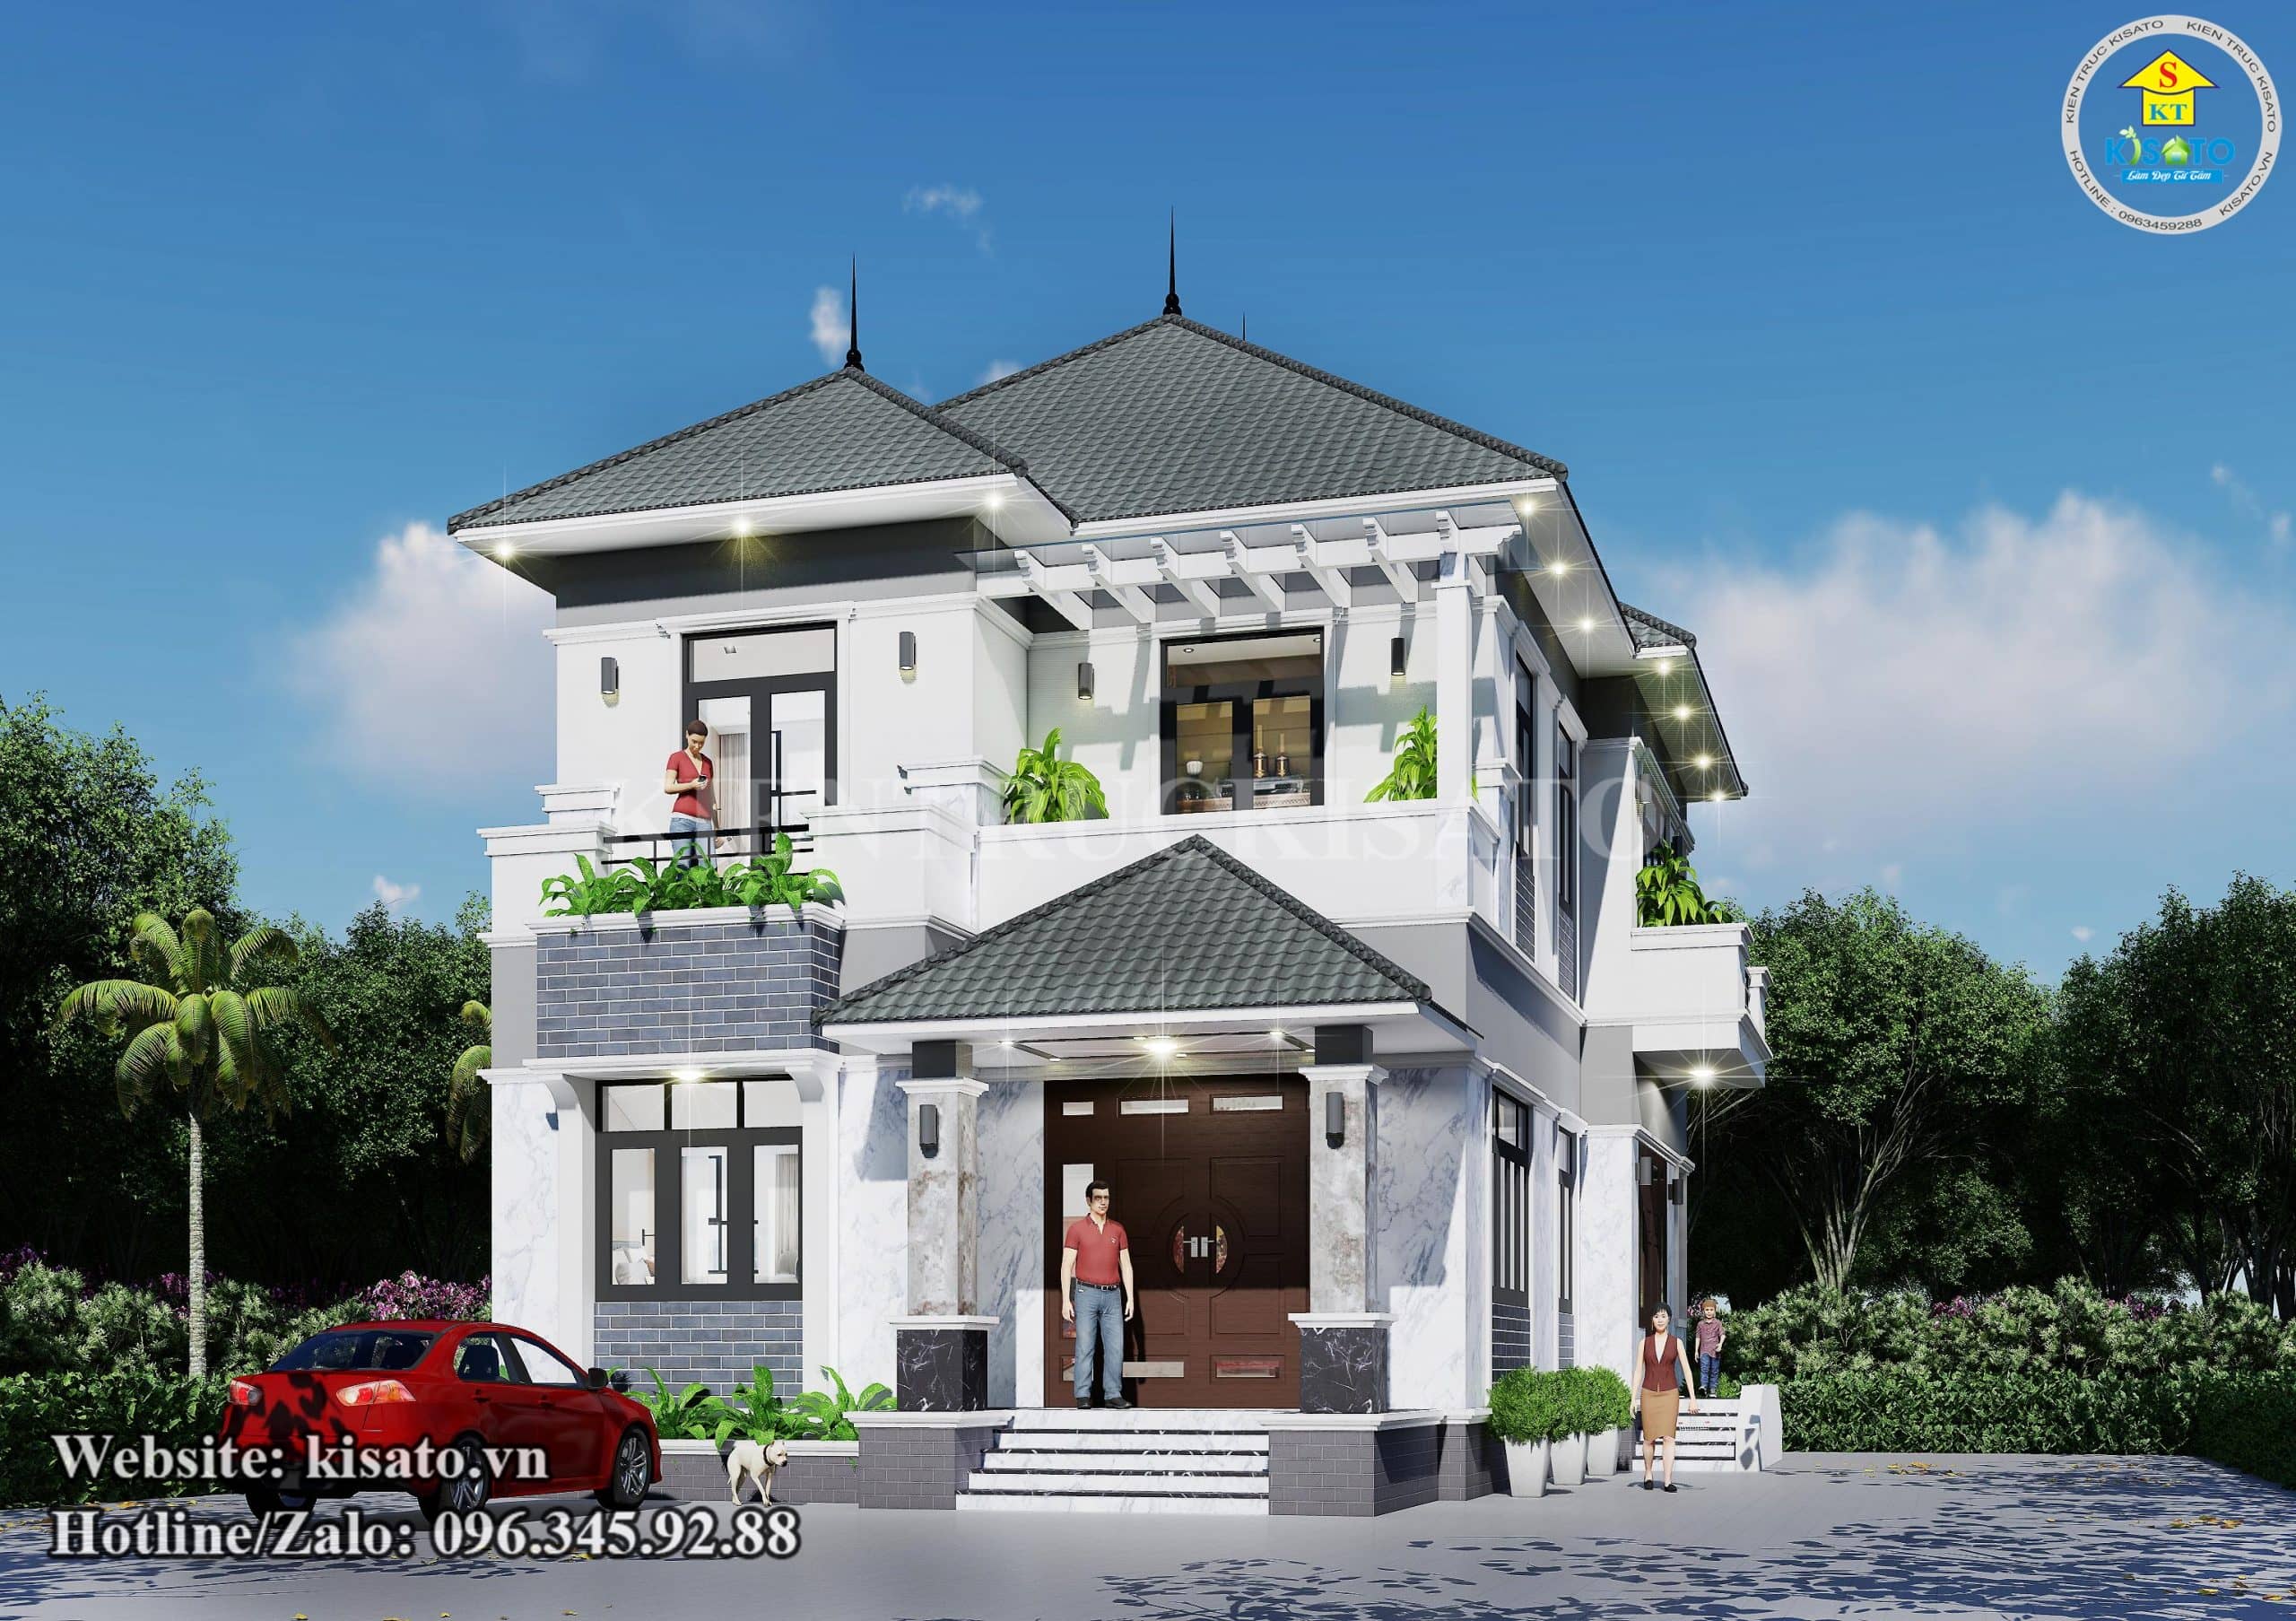 Mẫu nhà biệt thự 2 tầng 3 mặt tiền 05 phòng ngủ đẹp nhất năm 2021 BT287   Kiến trúc Duy Tân